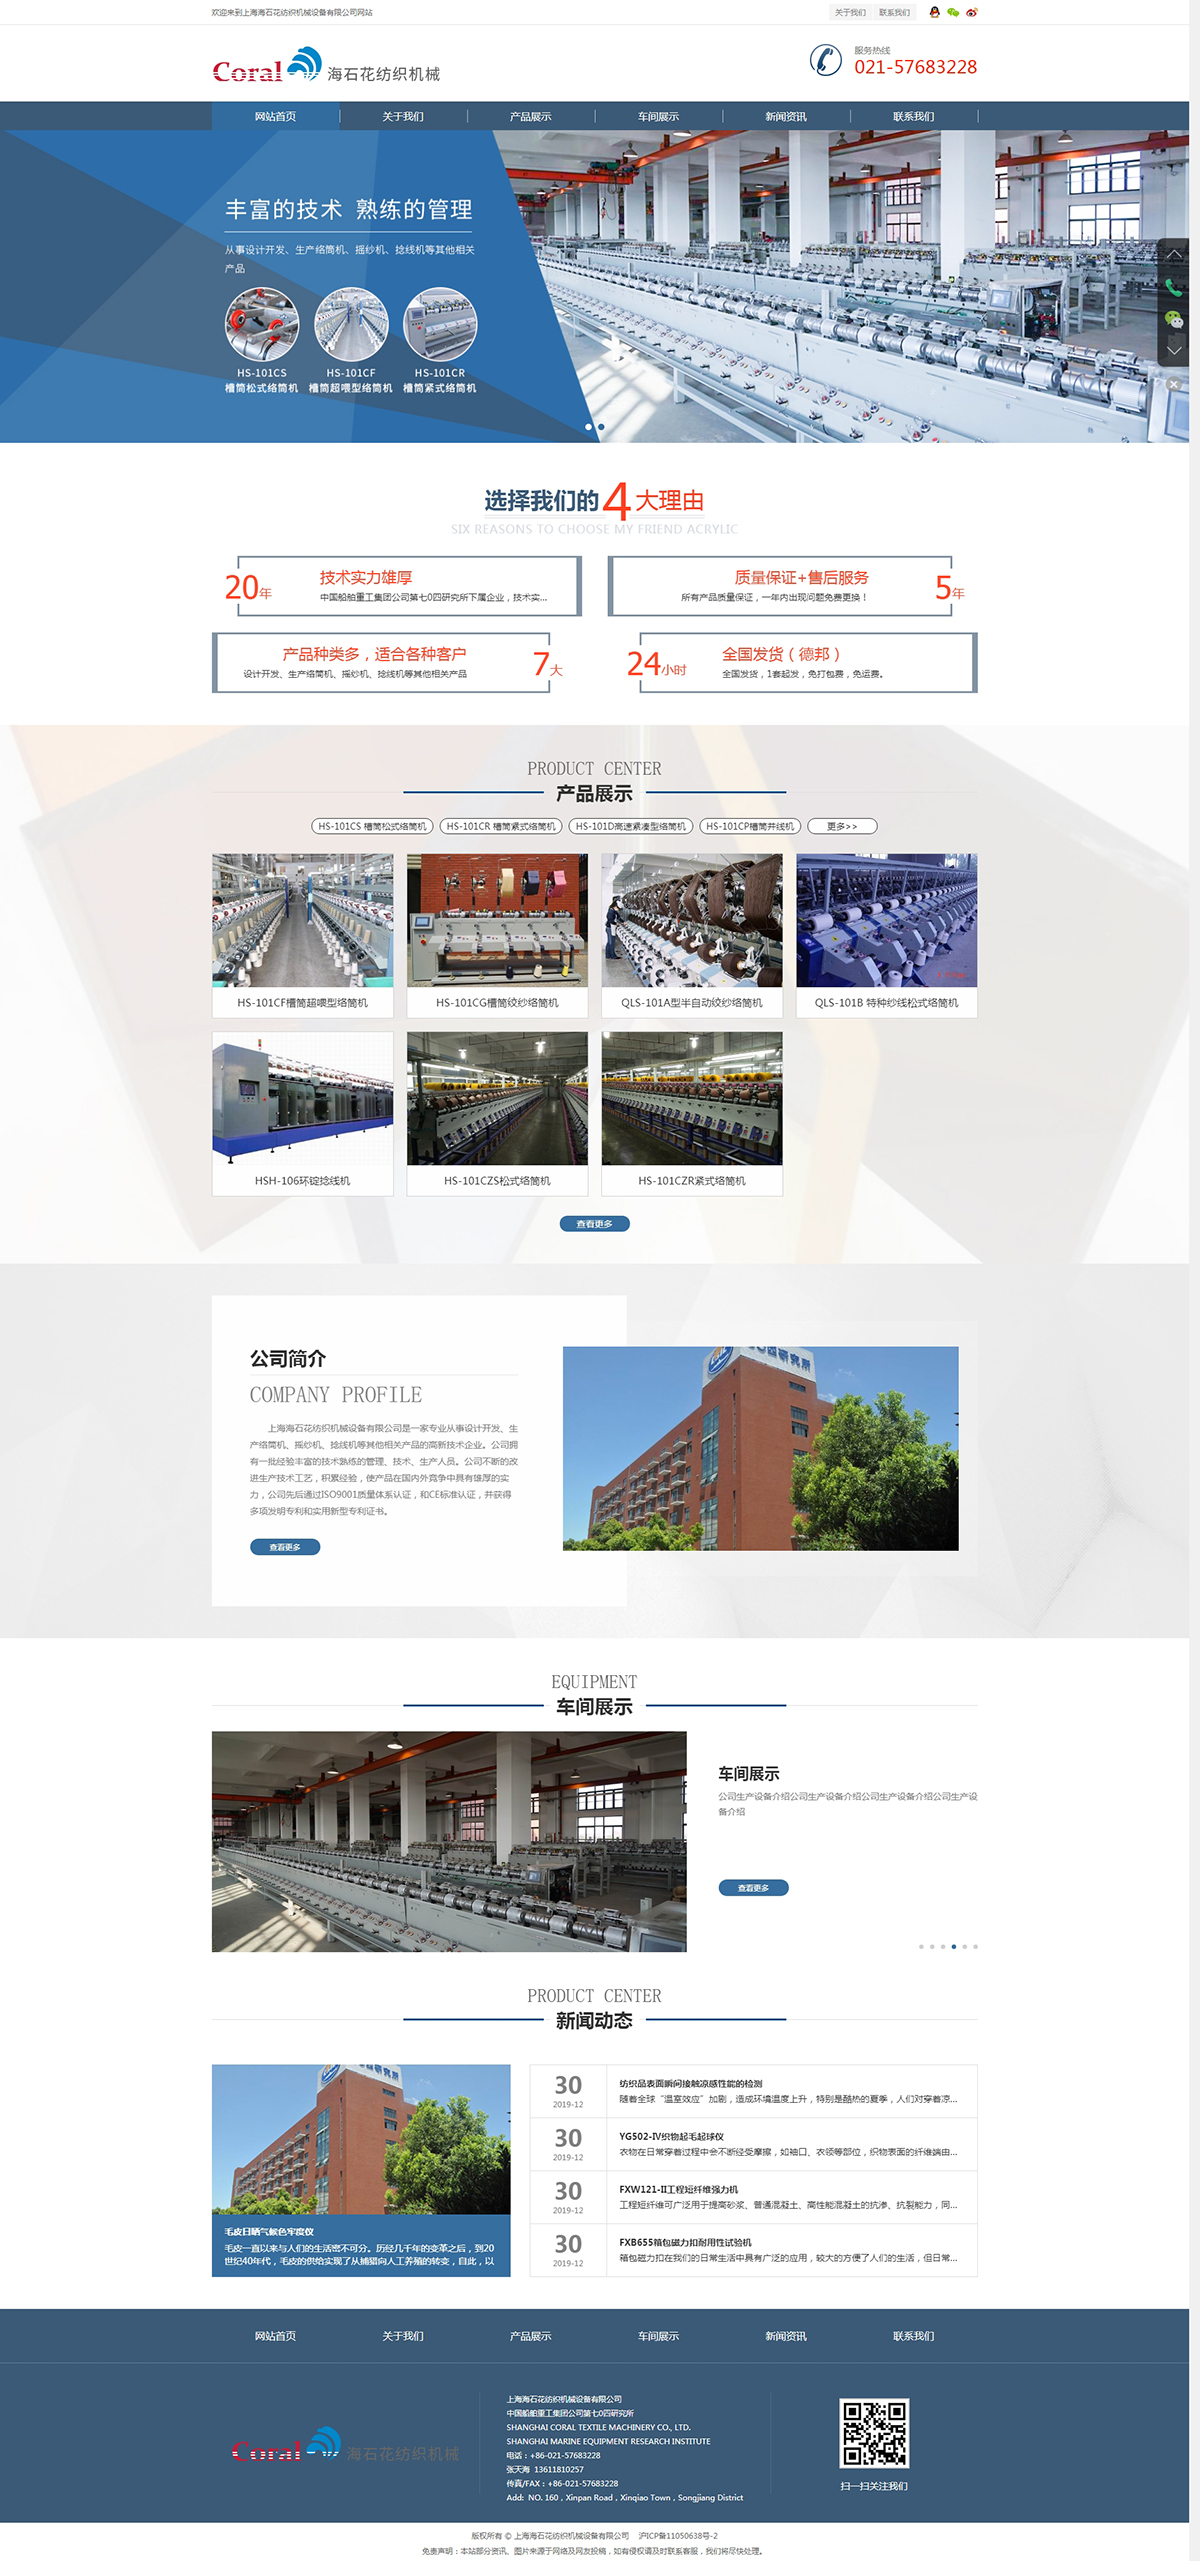 上海海石花紡織機械設備有限公司網站